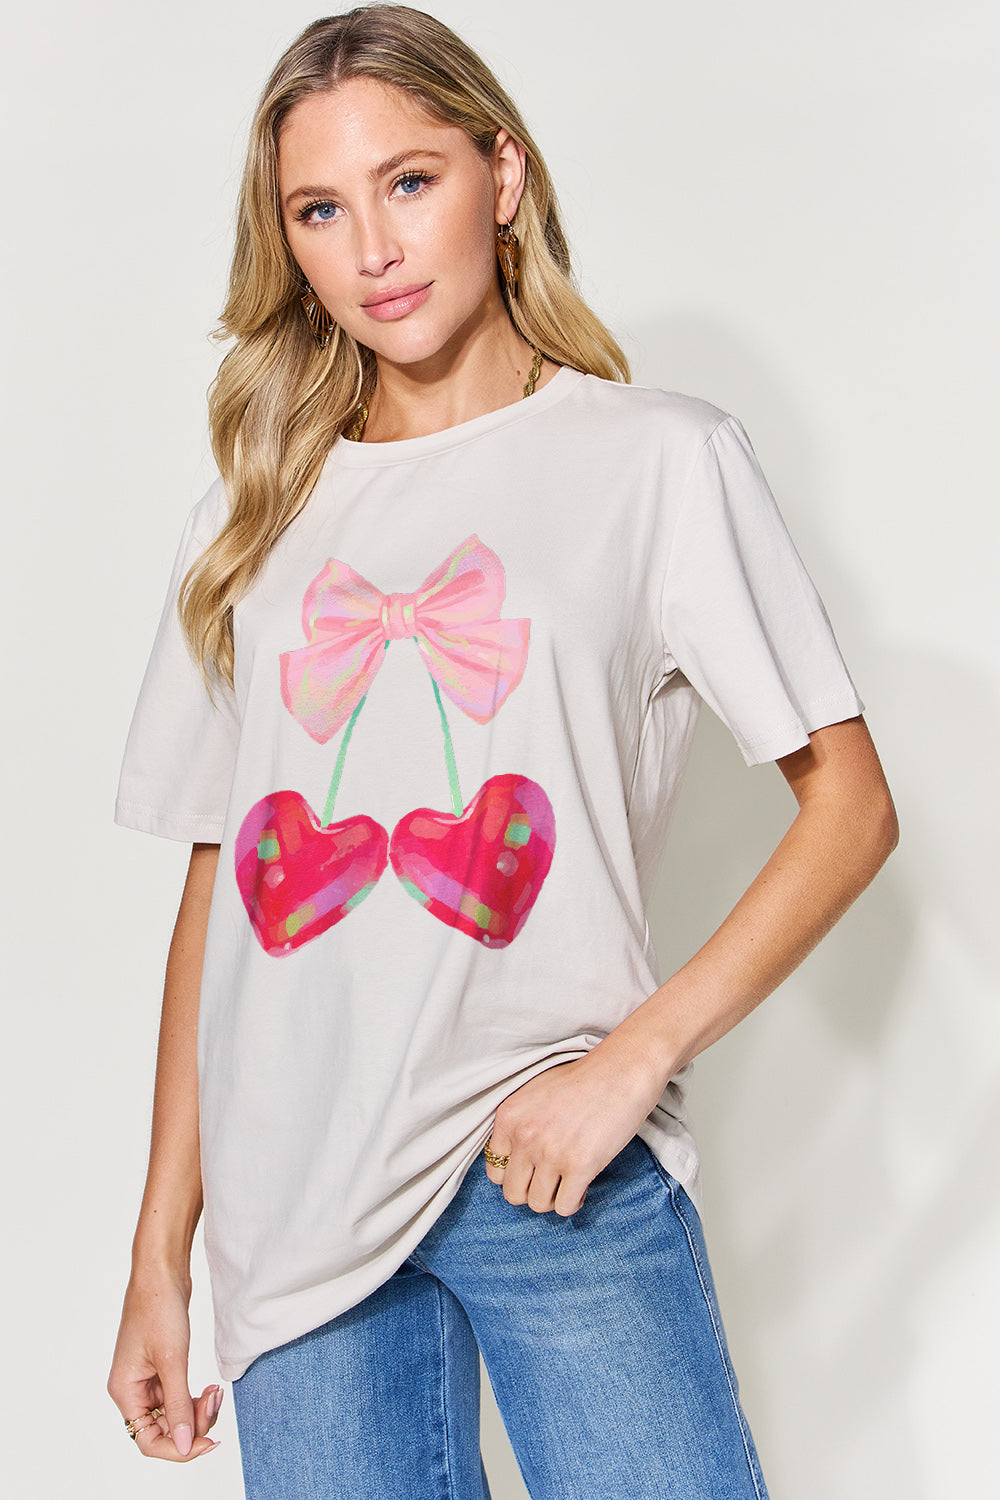 Bow Cherries Graphic Round Neck Short Sleeve Shirt